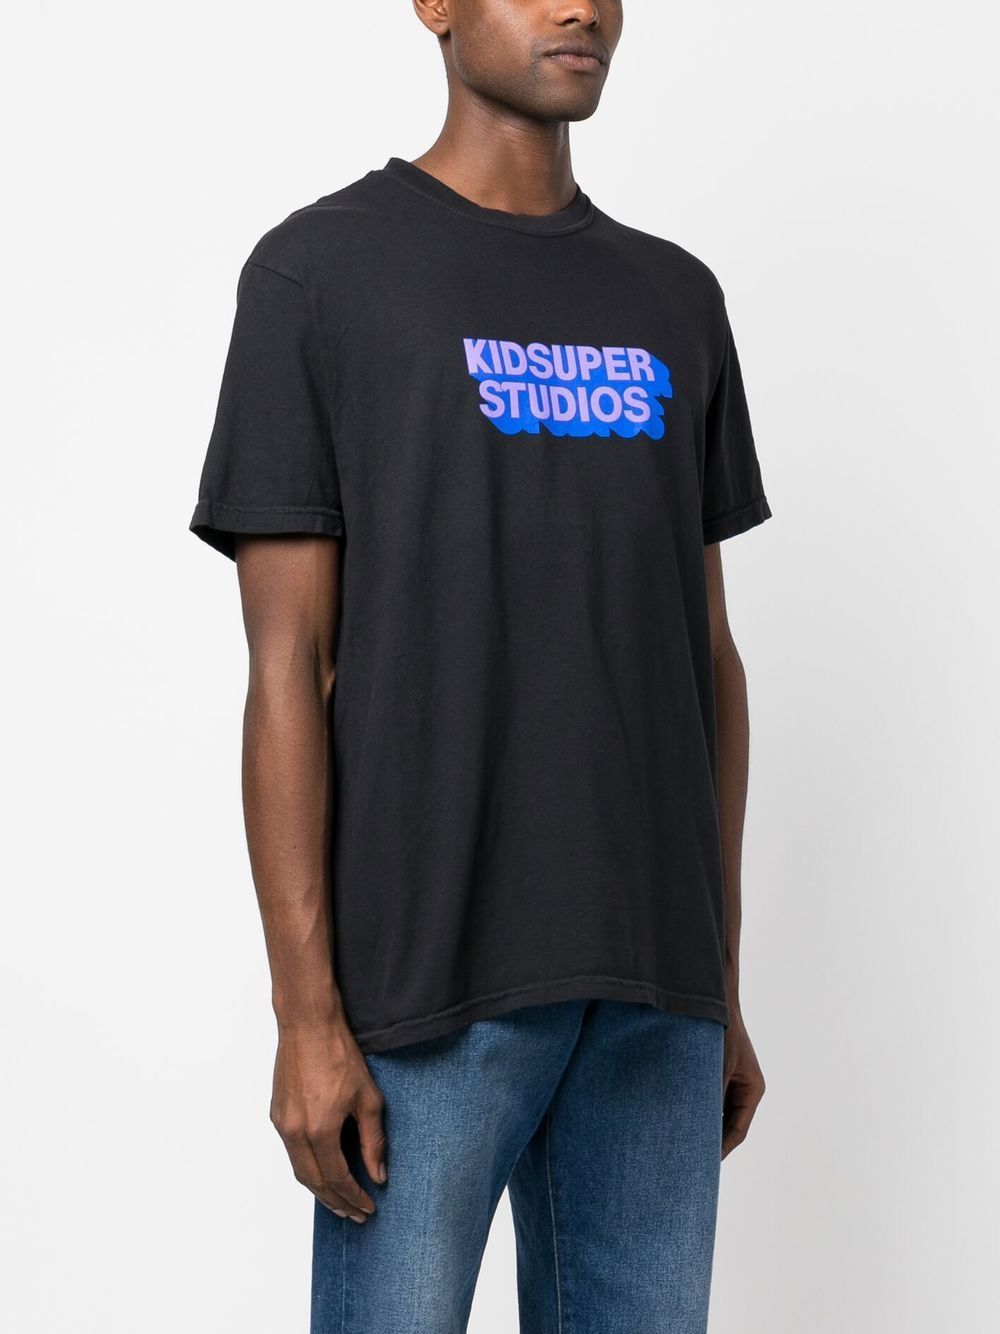 KIDSUPER KIDSUPER- Studios Cotton T-shirt